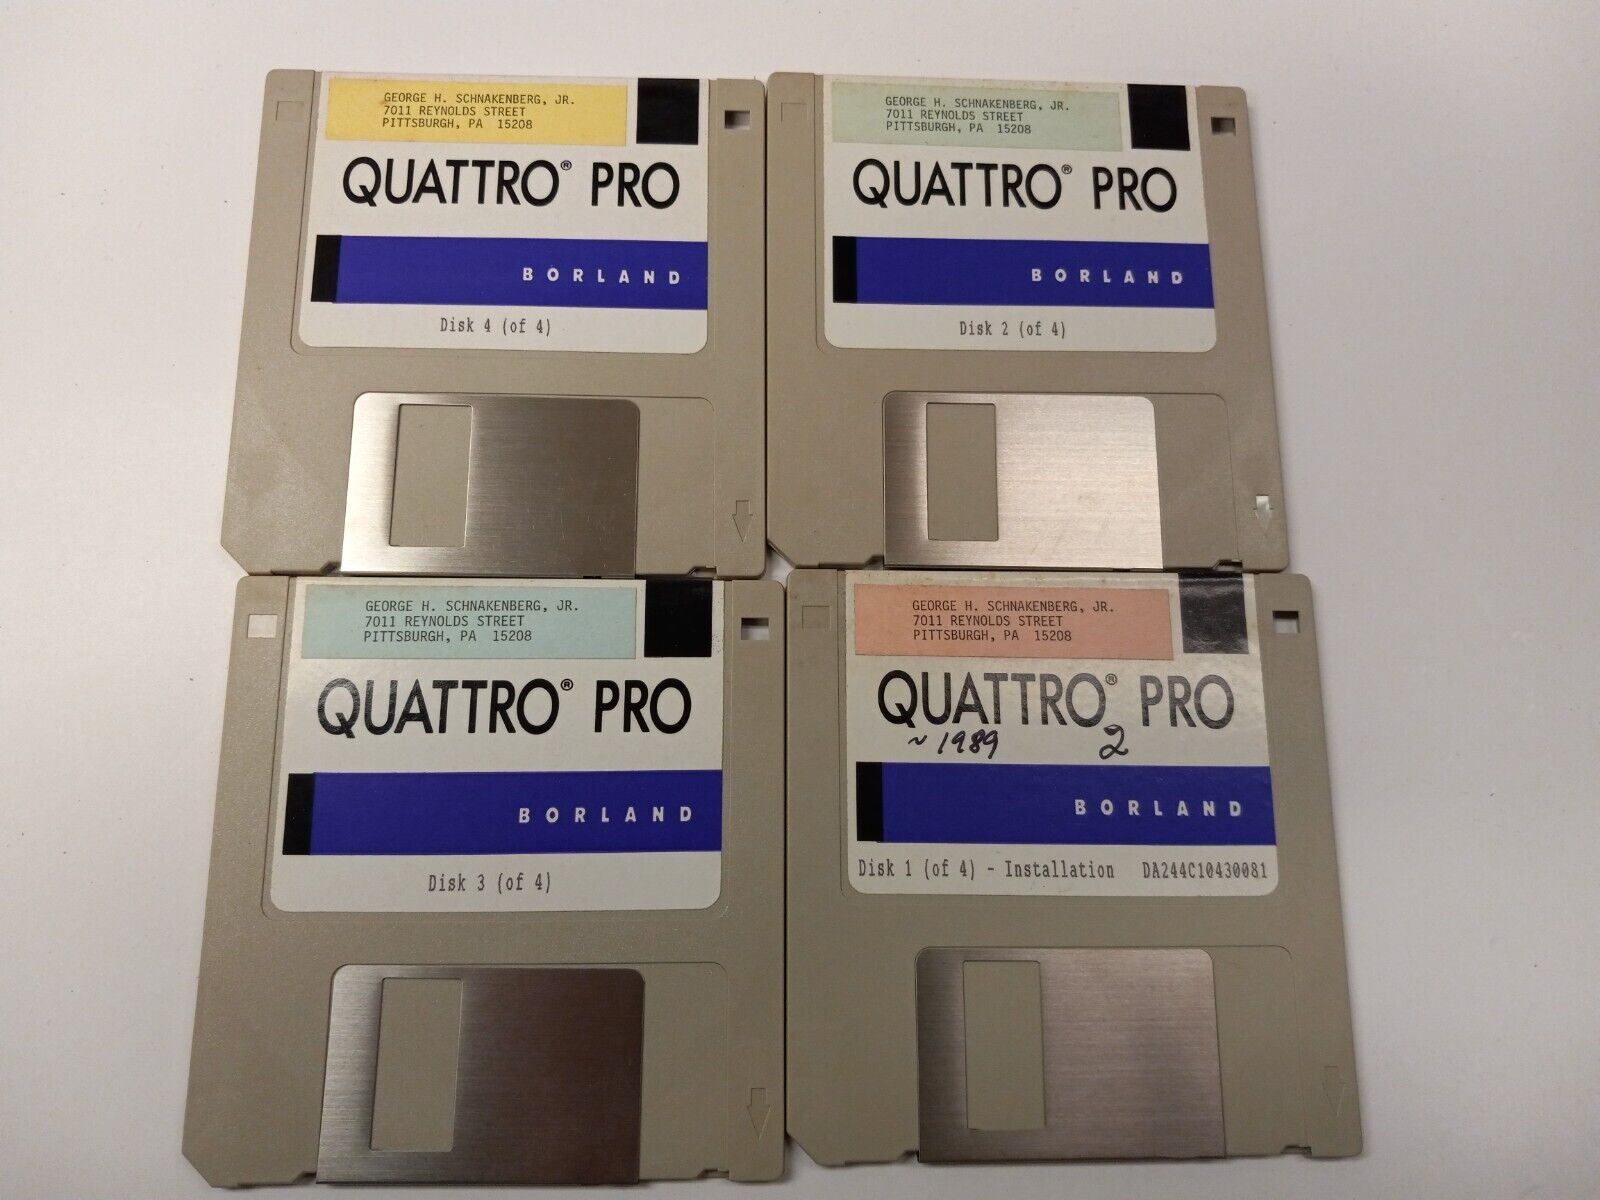 Original 1989 Borland Quattro Pro (3.5 Floppy Disks) Rare Purple Variant